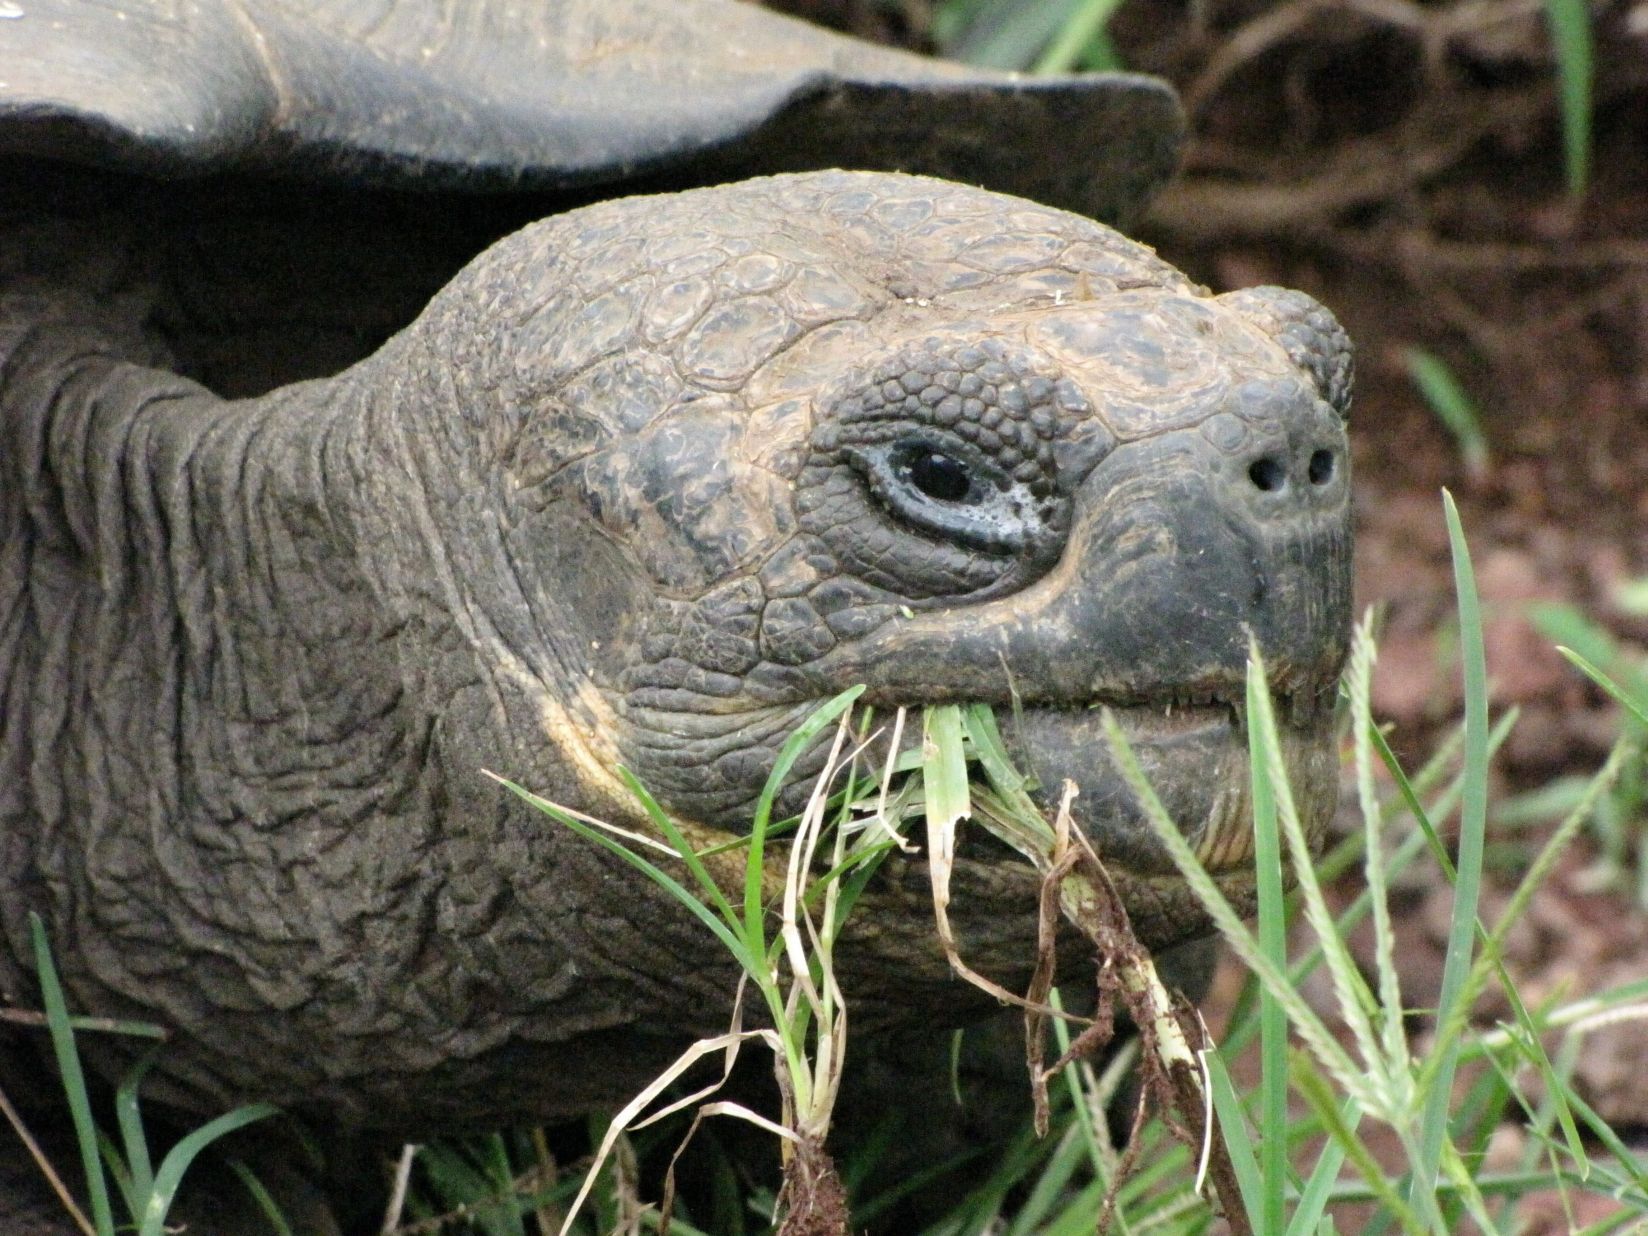 Джордж беше открит от зоолози през 1972 г. на един от Галапагоските остров